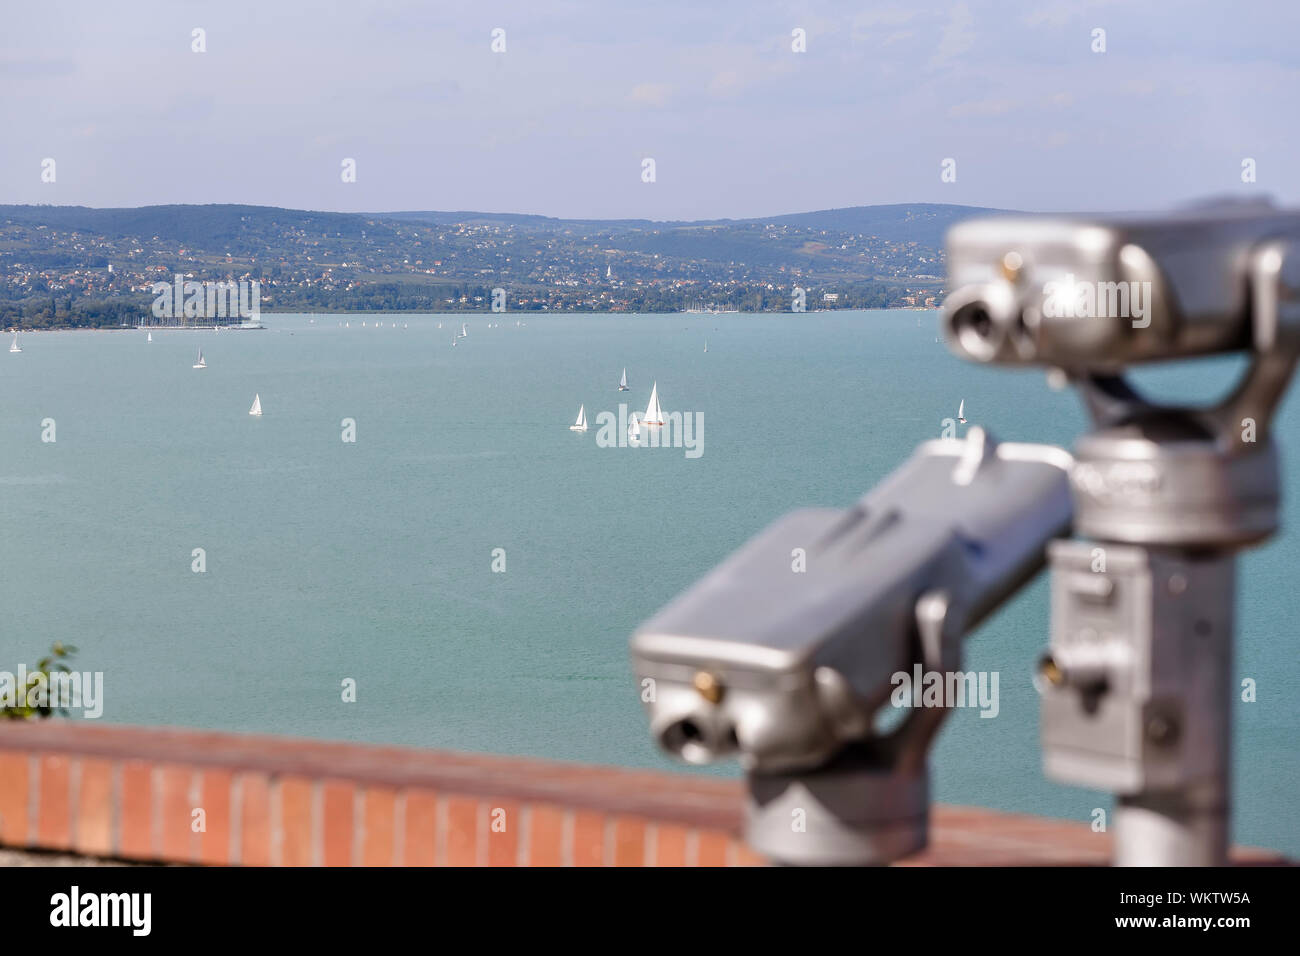 Ein Blick auf den Balaton Von der Suche mit dem Fernglas tourist. Ungarn Stockfoto